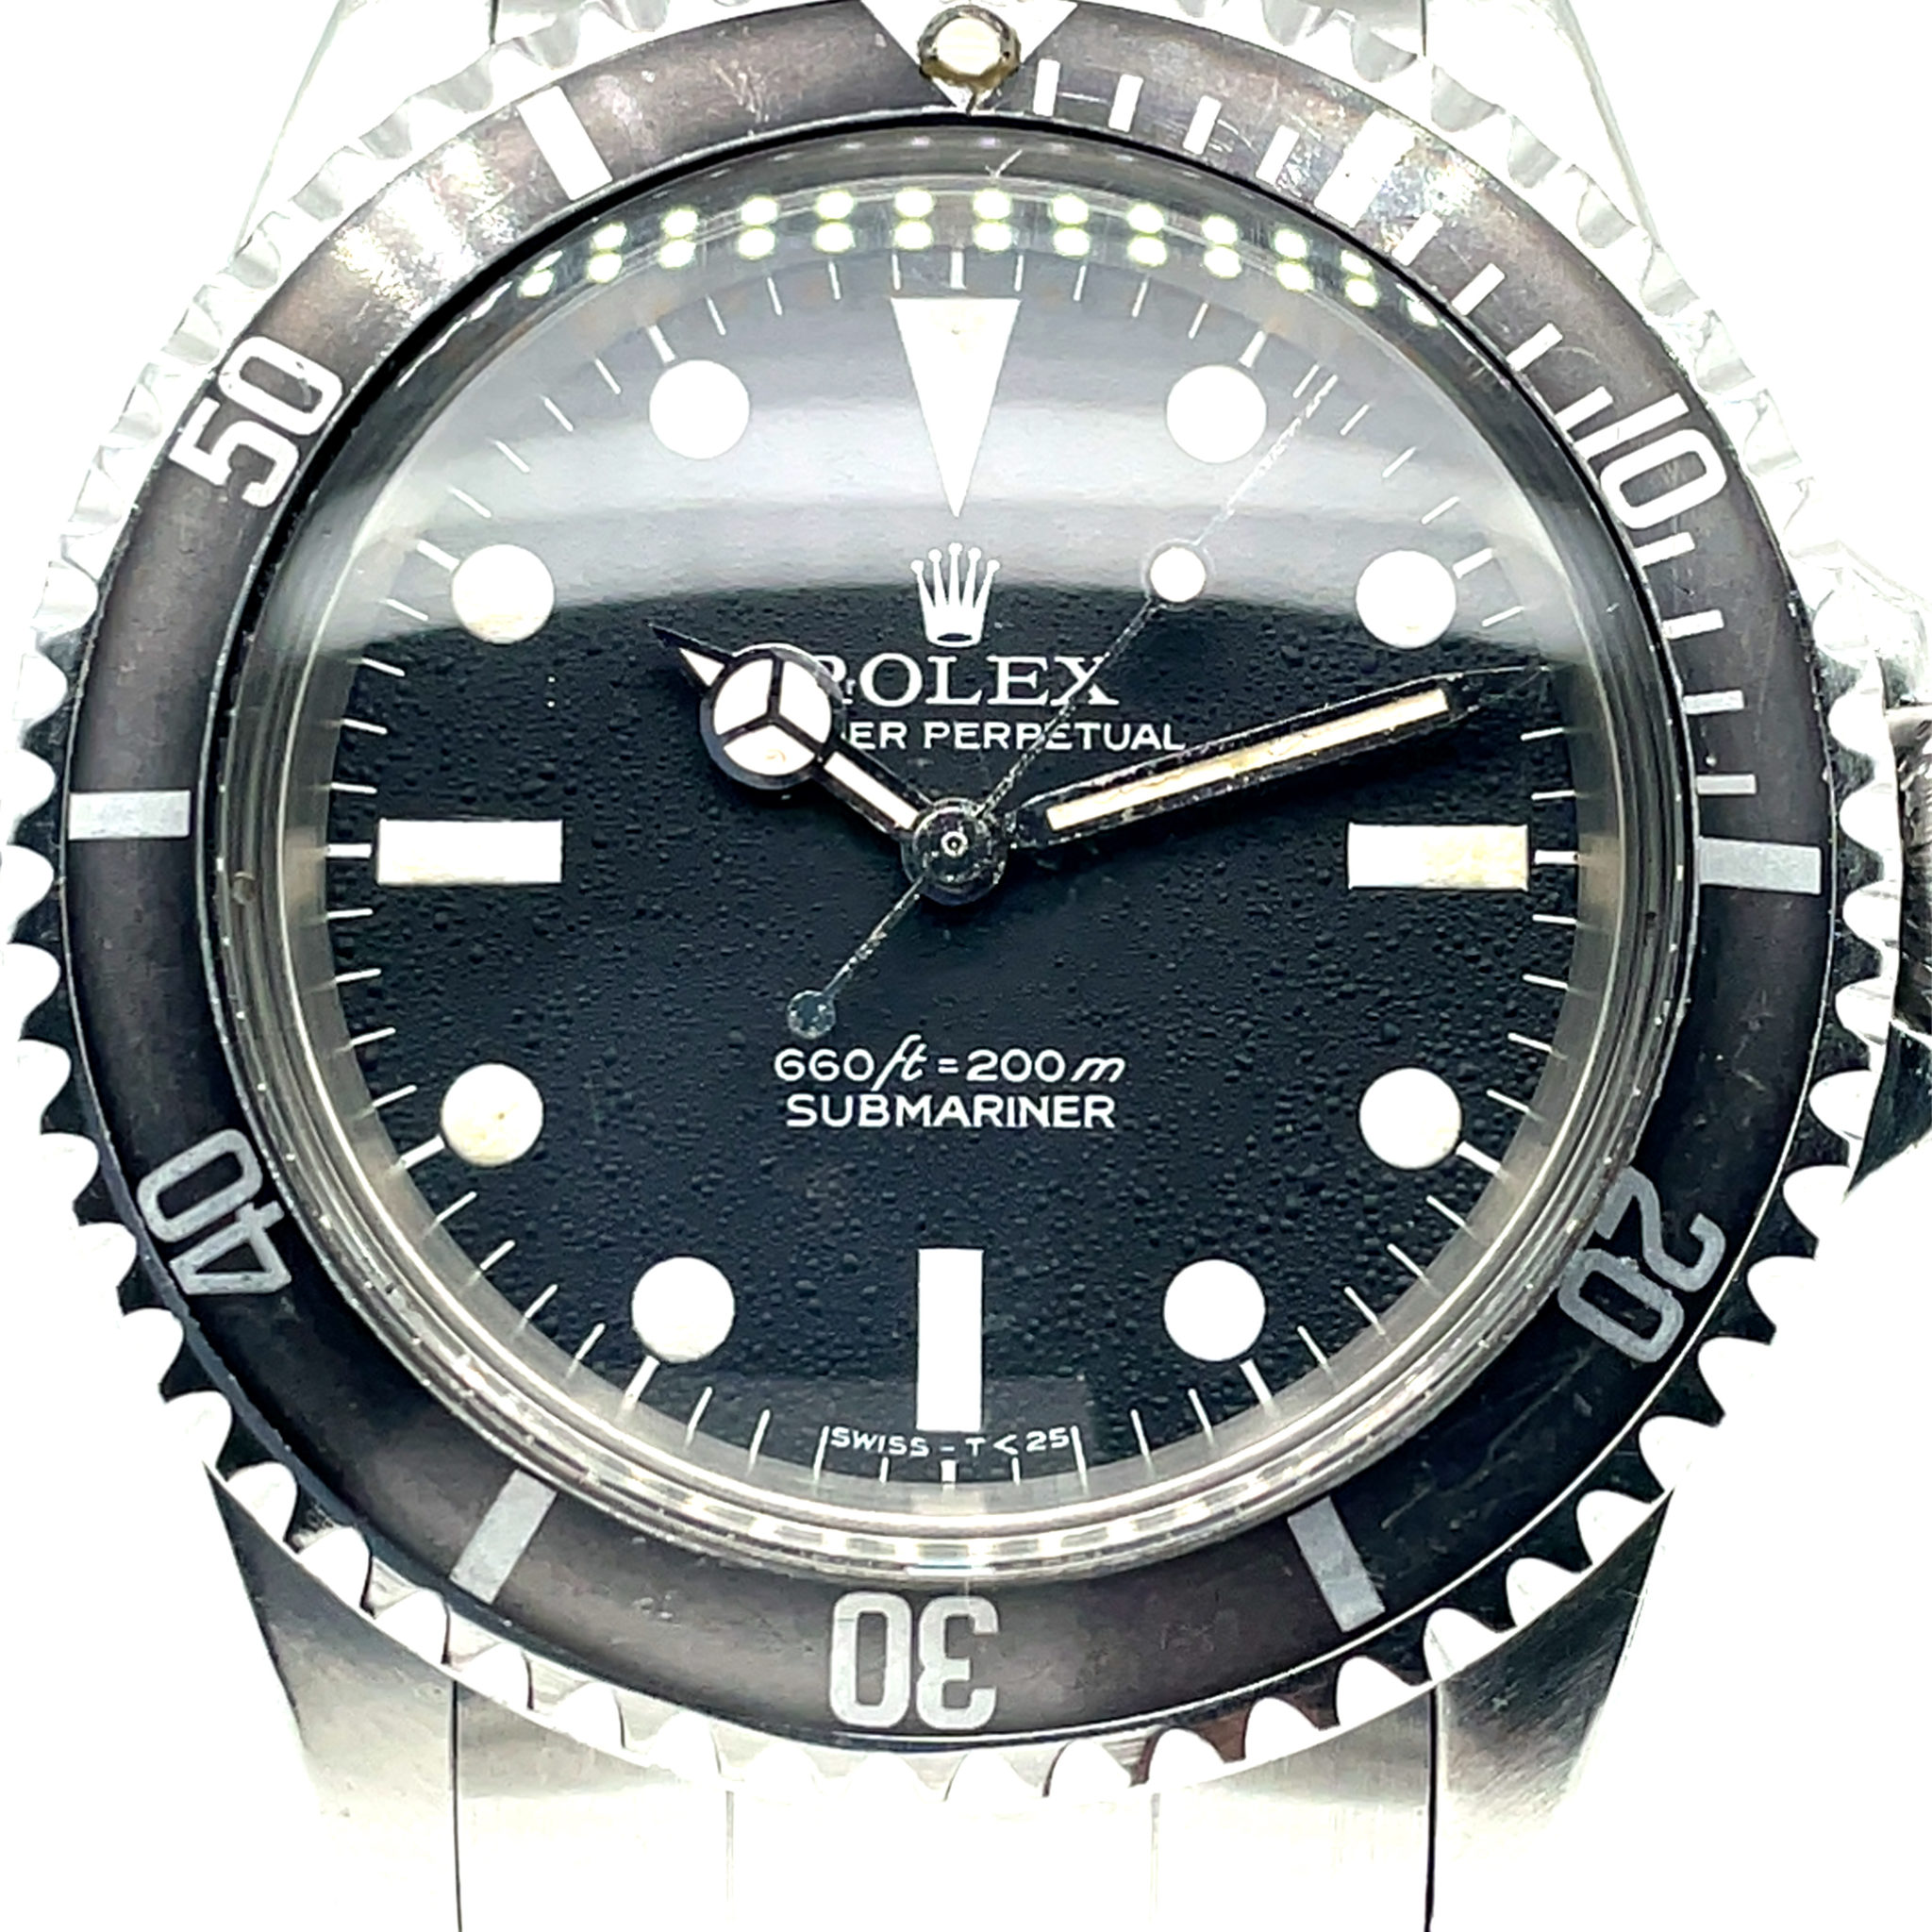 Rolex Submariner Ref 5513 Feet first dial 1969 Cal. 1620 Ghost Bezel